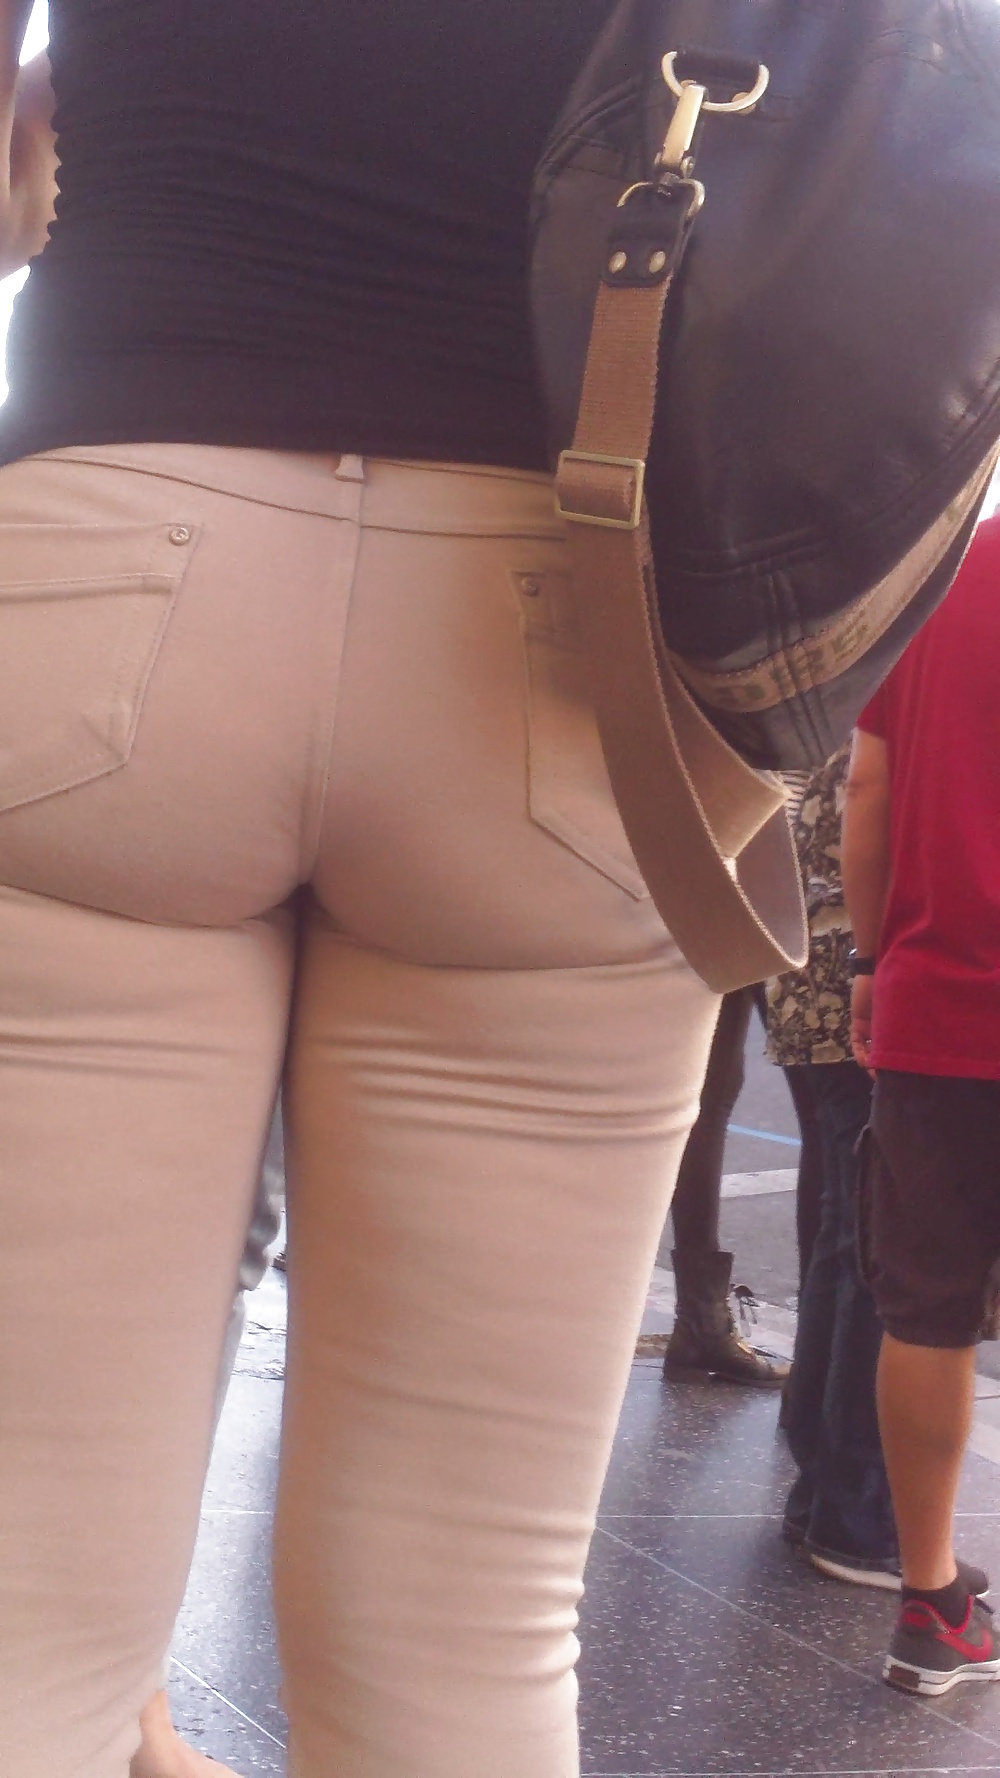 Popular teen girls ass & butt in jeans Part 6 #32009841